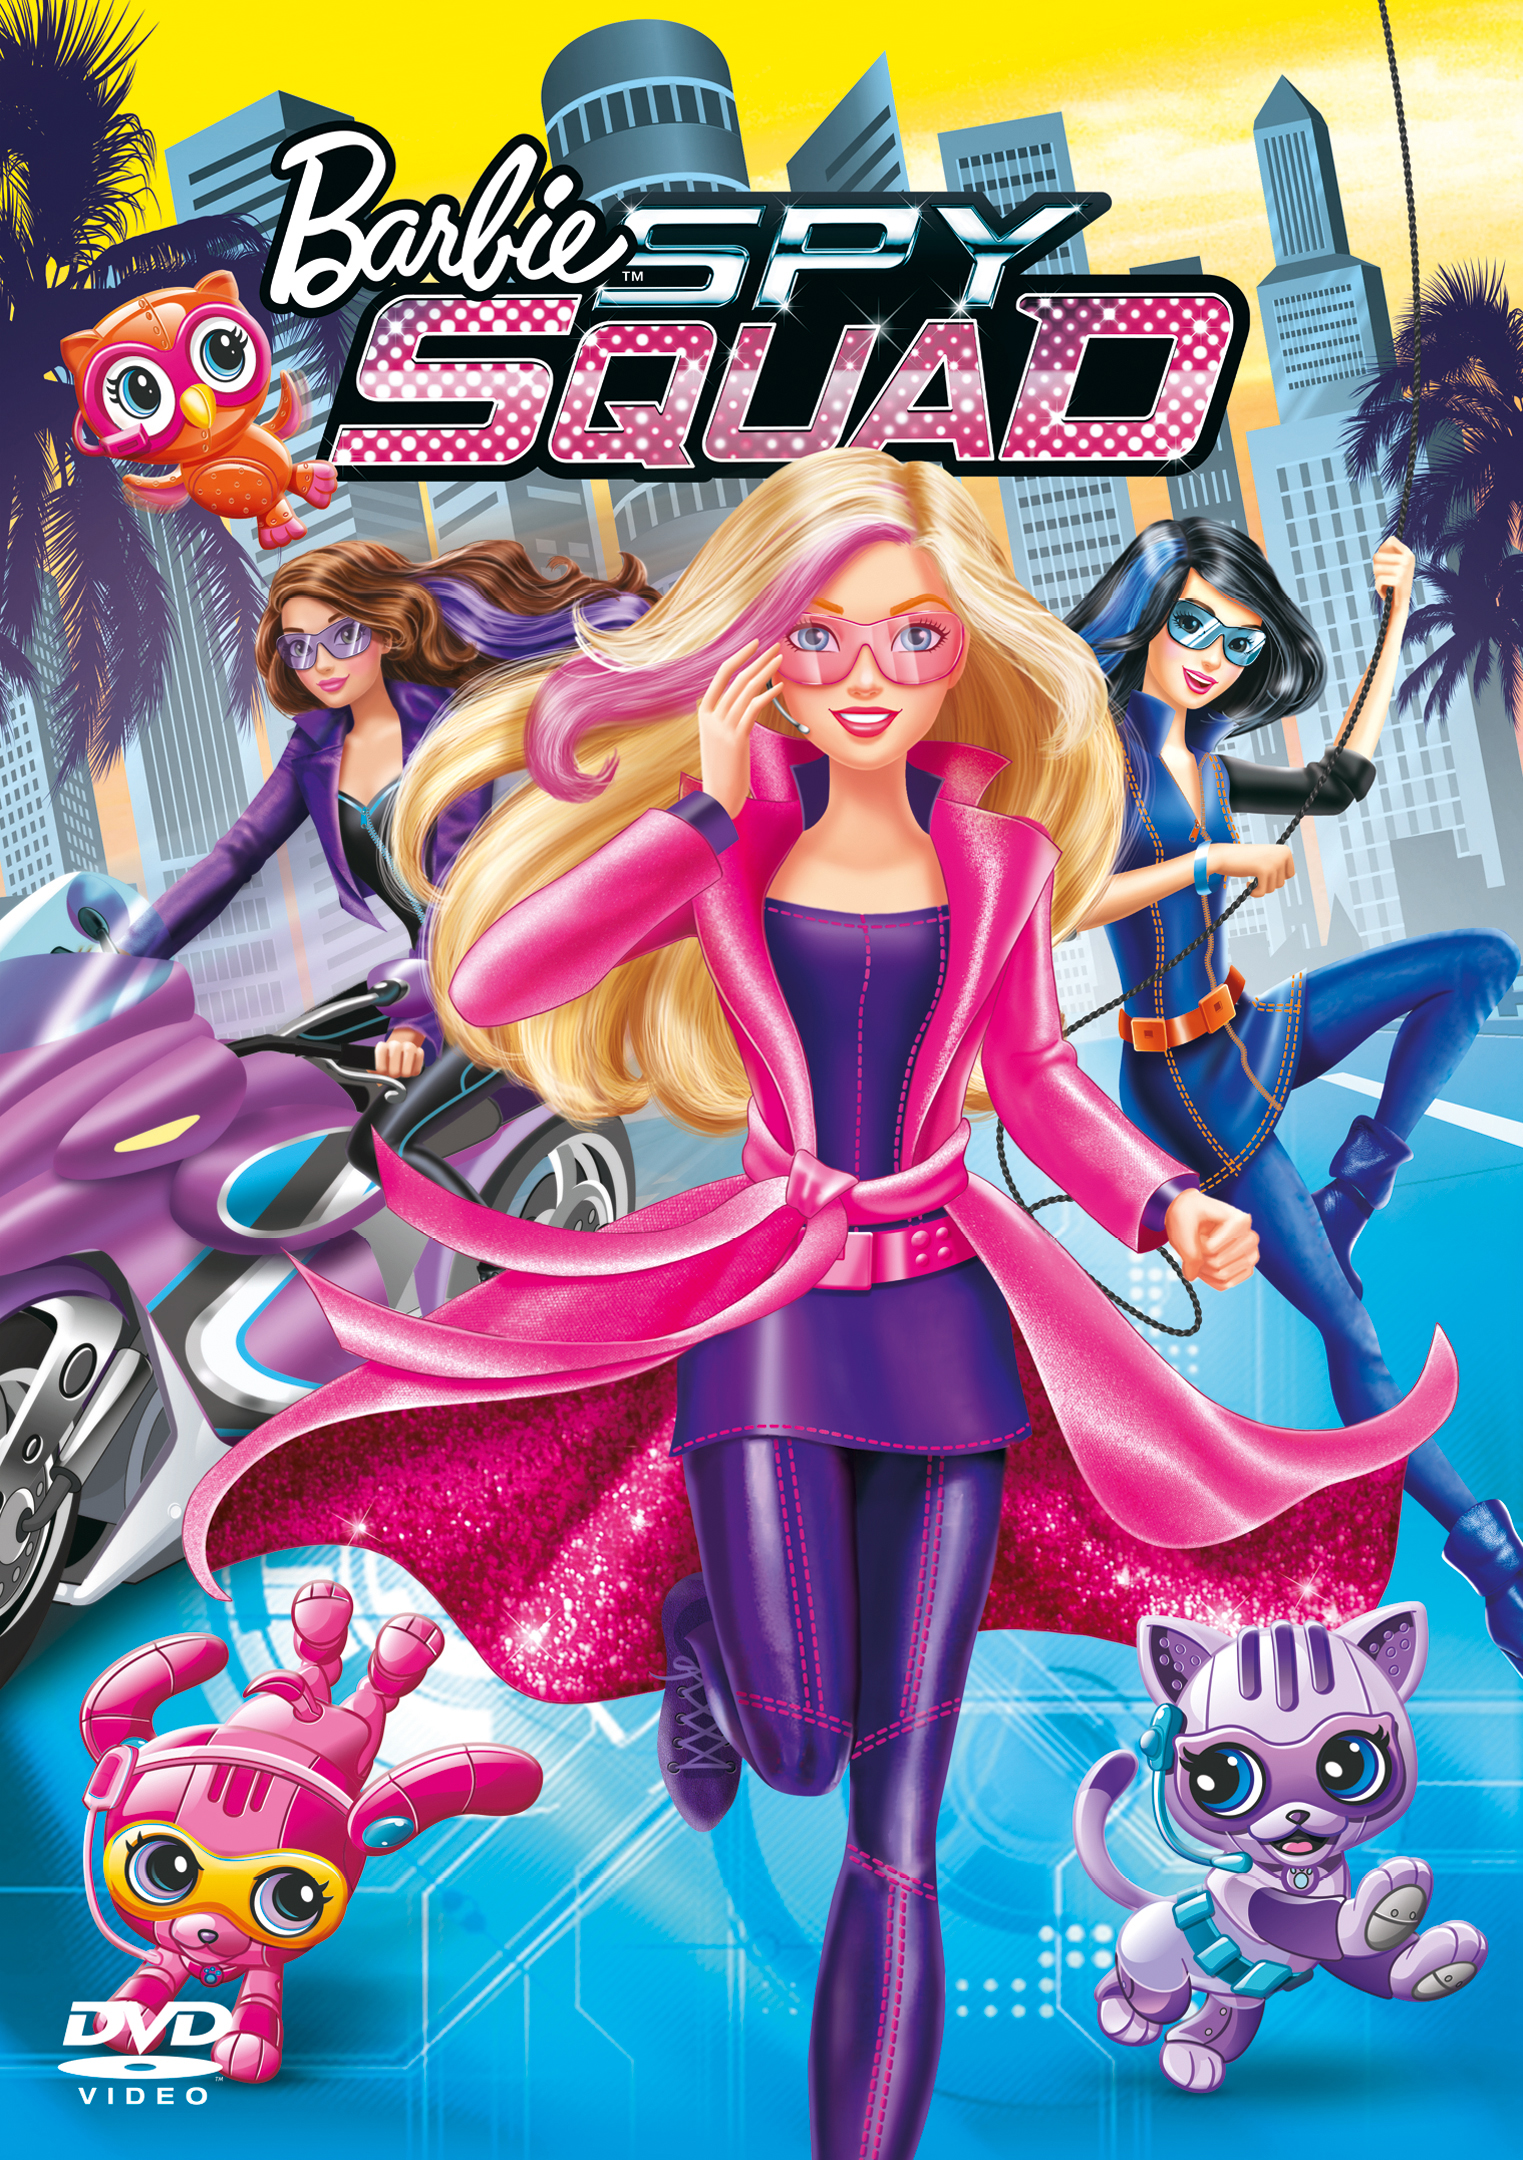 ดูหนังออนไลน์ฟรี Barbie Spy Squad (2016) บาร์บี้ สายลับเจ้าเสน่ห์ หนังเต็มเรื่อง หนังมาสเตอร์ ดูหนังHD ดูหนังออนไลน์ ดูหนังใหม่